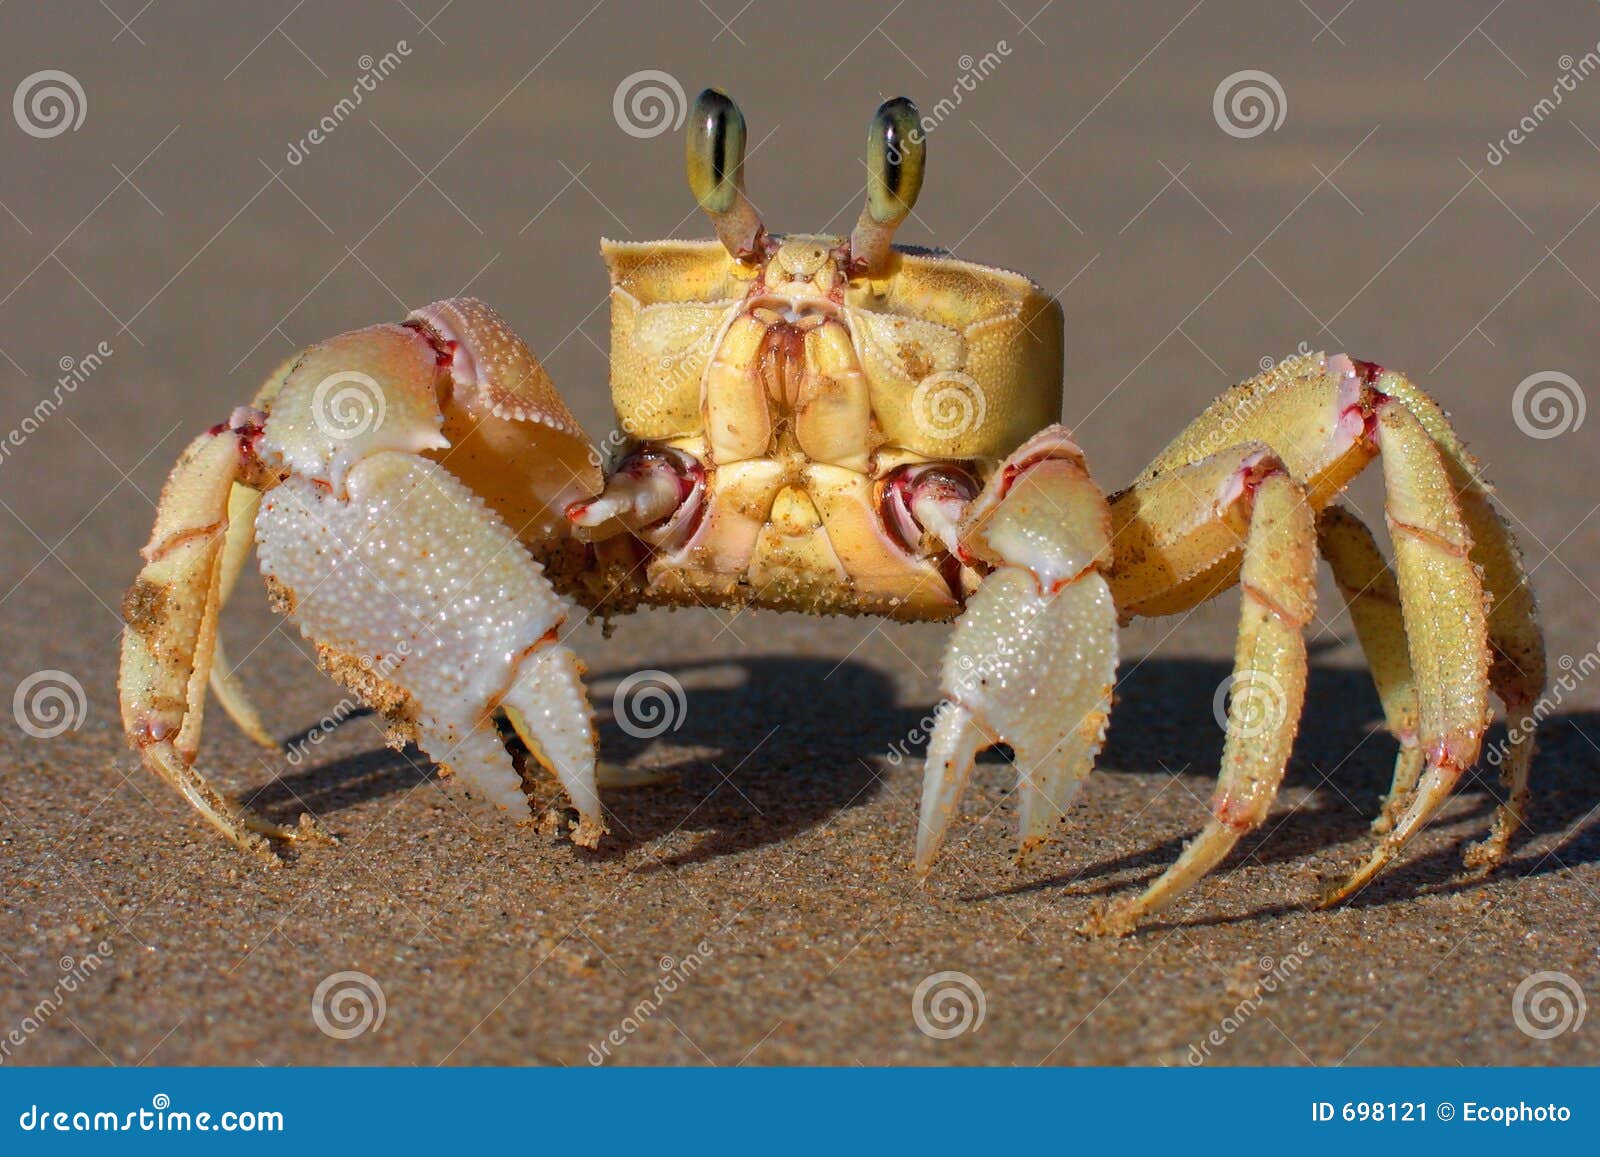 alert ghost crab